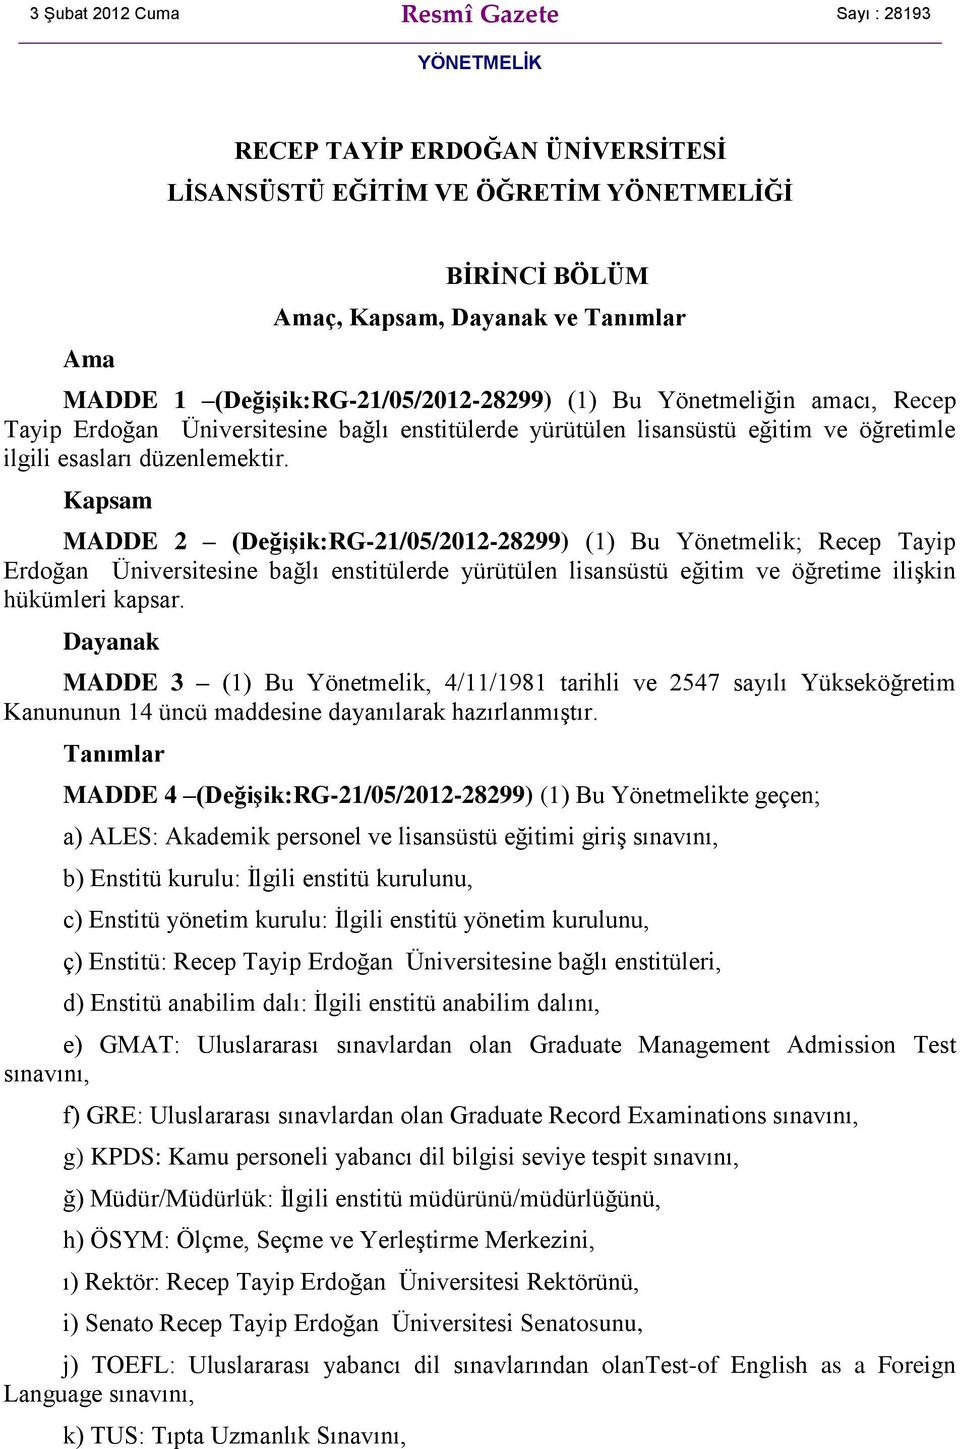 Kapsam MADDE 2 (Değişik:RG-21/05/2012-28299) (1) Bu Yönetmelik; Recep Tayip Erdoğan Üniversitesine bağlı enstitülerde yürütülen lisansüstü eğitim ve öğretime ilişkin hükümleri kapsar.